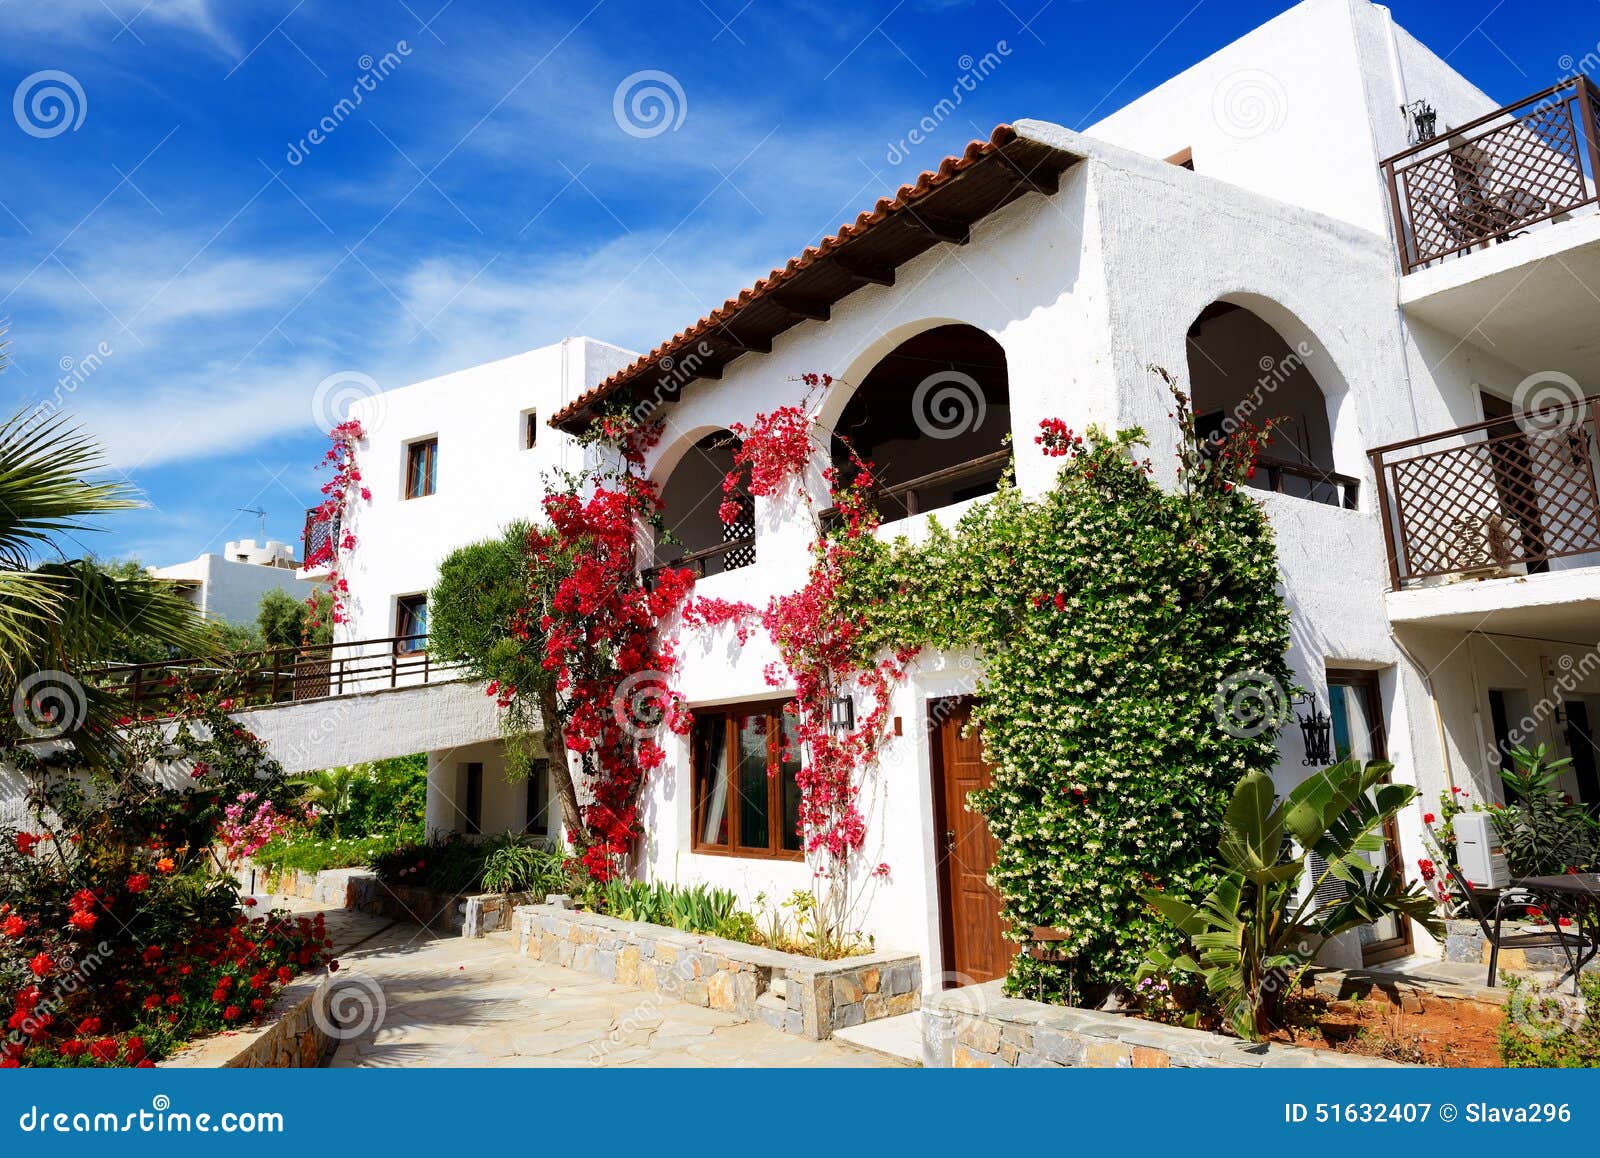 Casas De Campo Decoradas Com As Flores No Hotel De Luxo Imagem de Stock -  Imagem de relaxamento, branco: 51632407